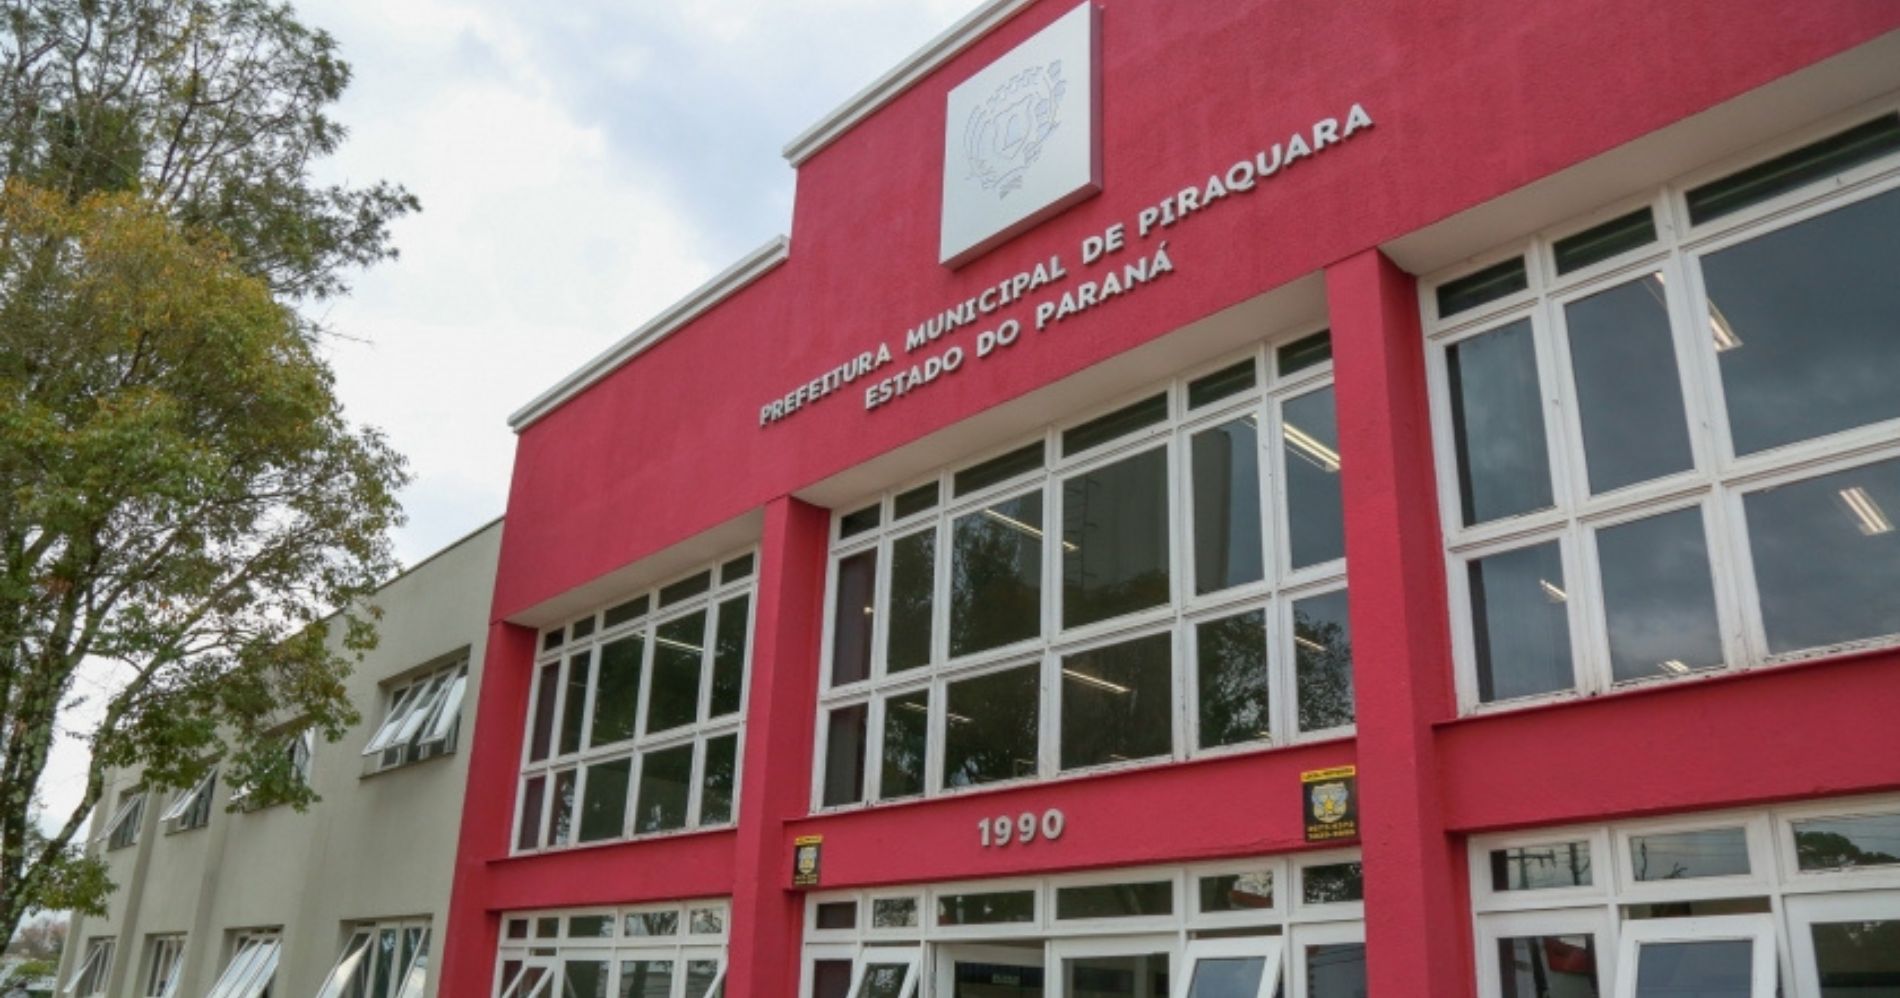 Concurso da Prefeitura de Piraquara oferece salários de até R$ 14 mil